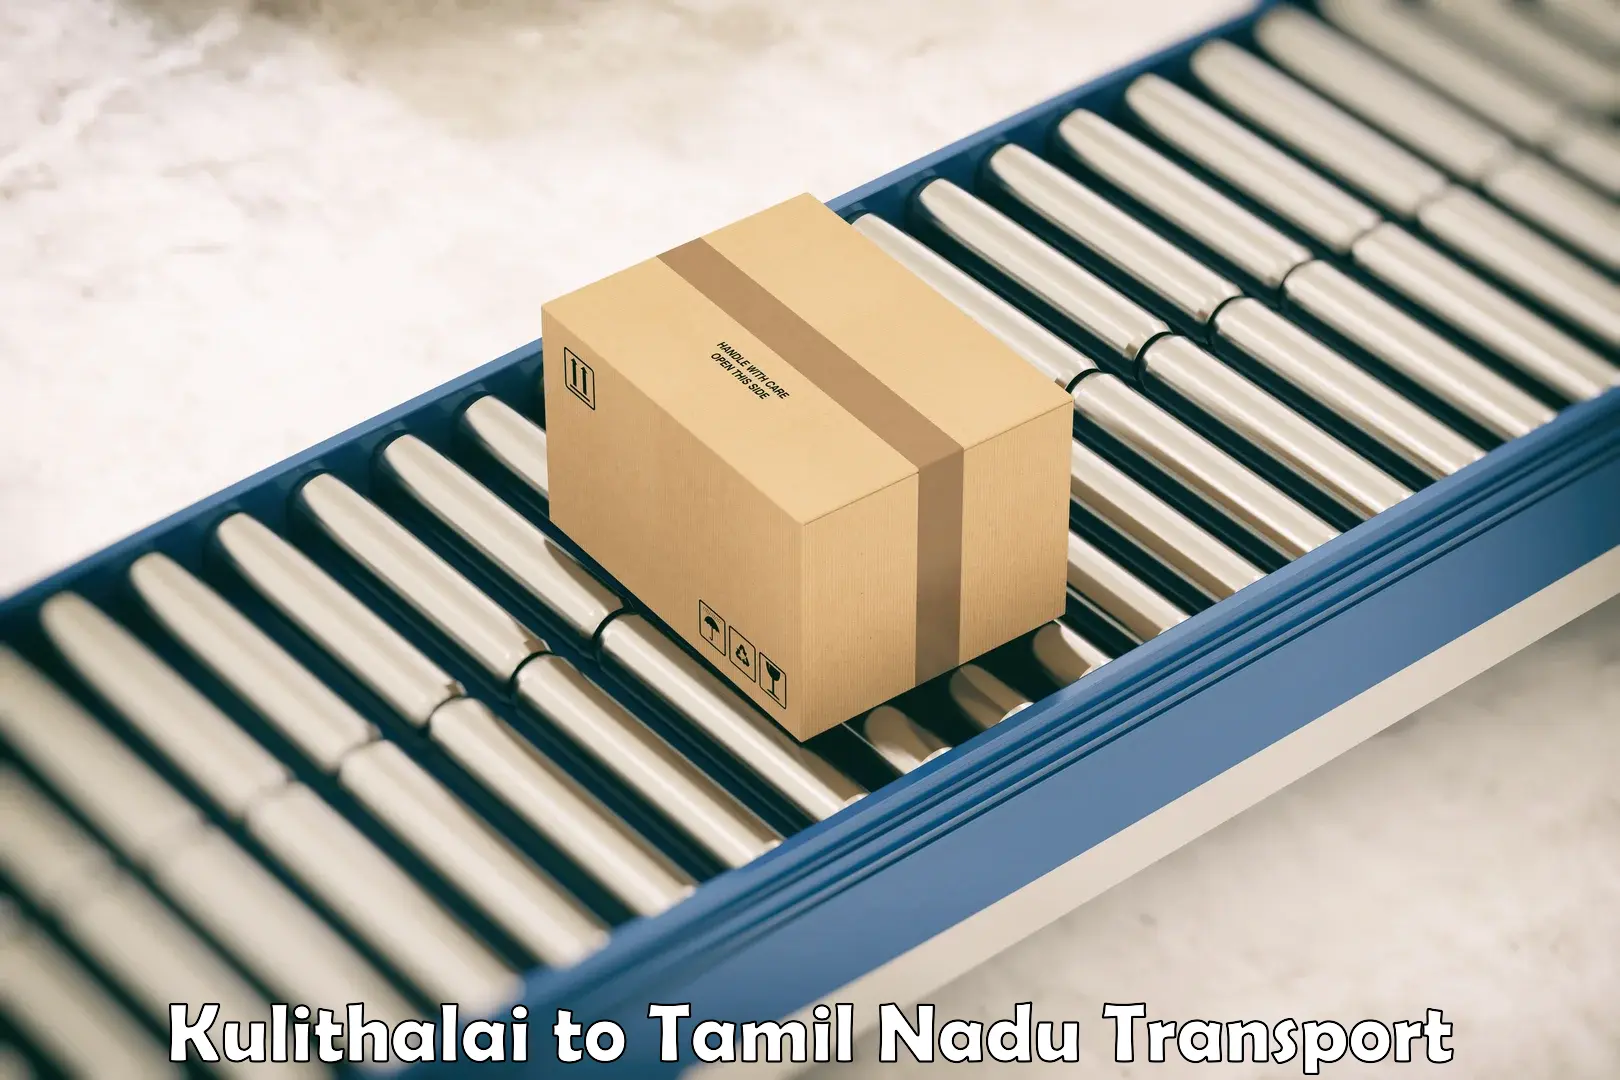 Furniture transport service Kulithalai to Tirupur